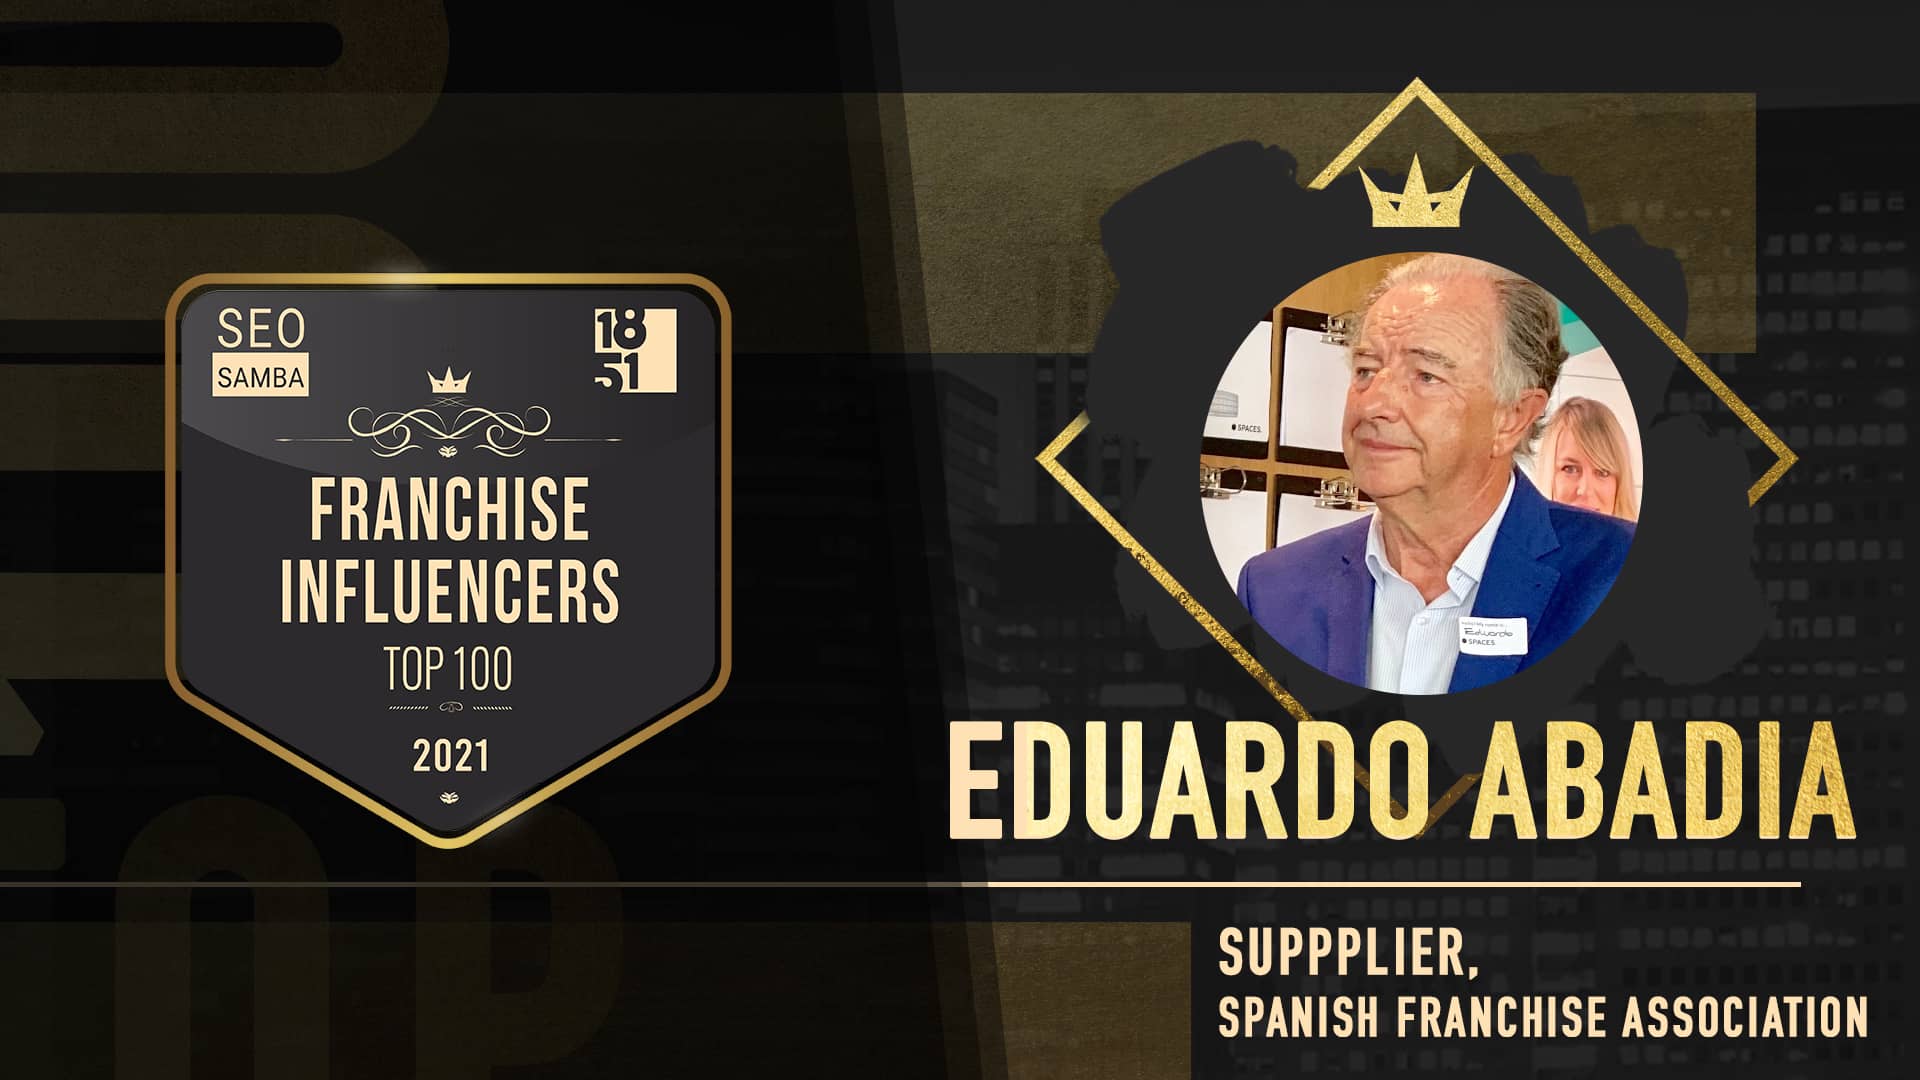 Eduardo Abadía - Spanish Franchise Association